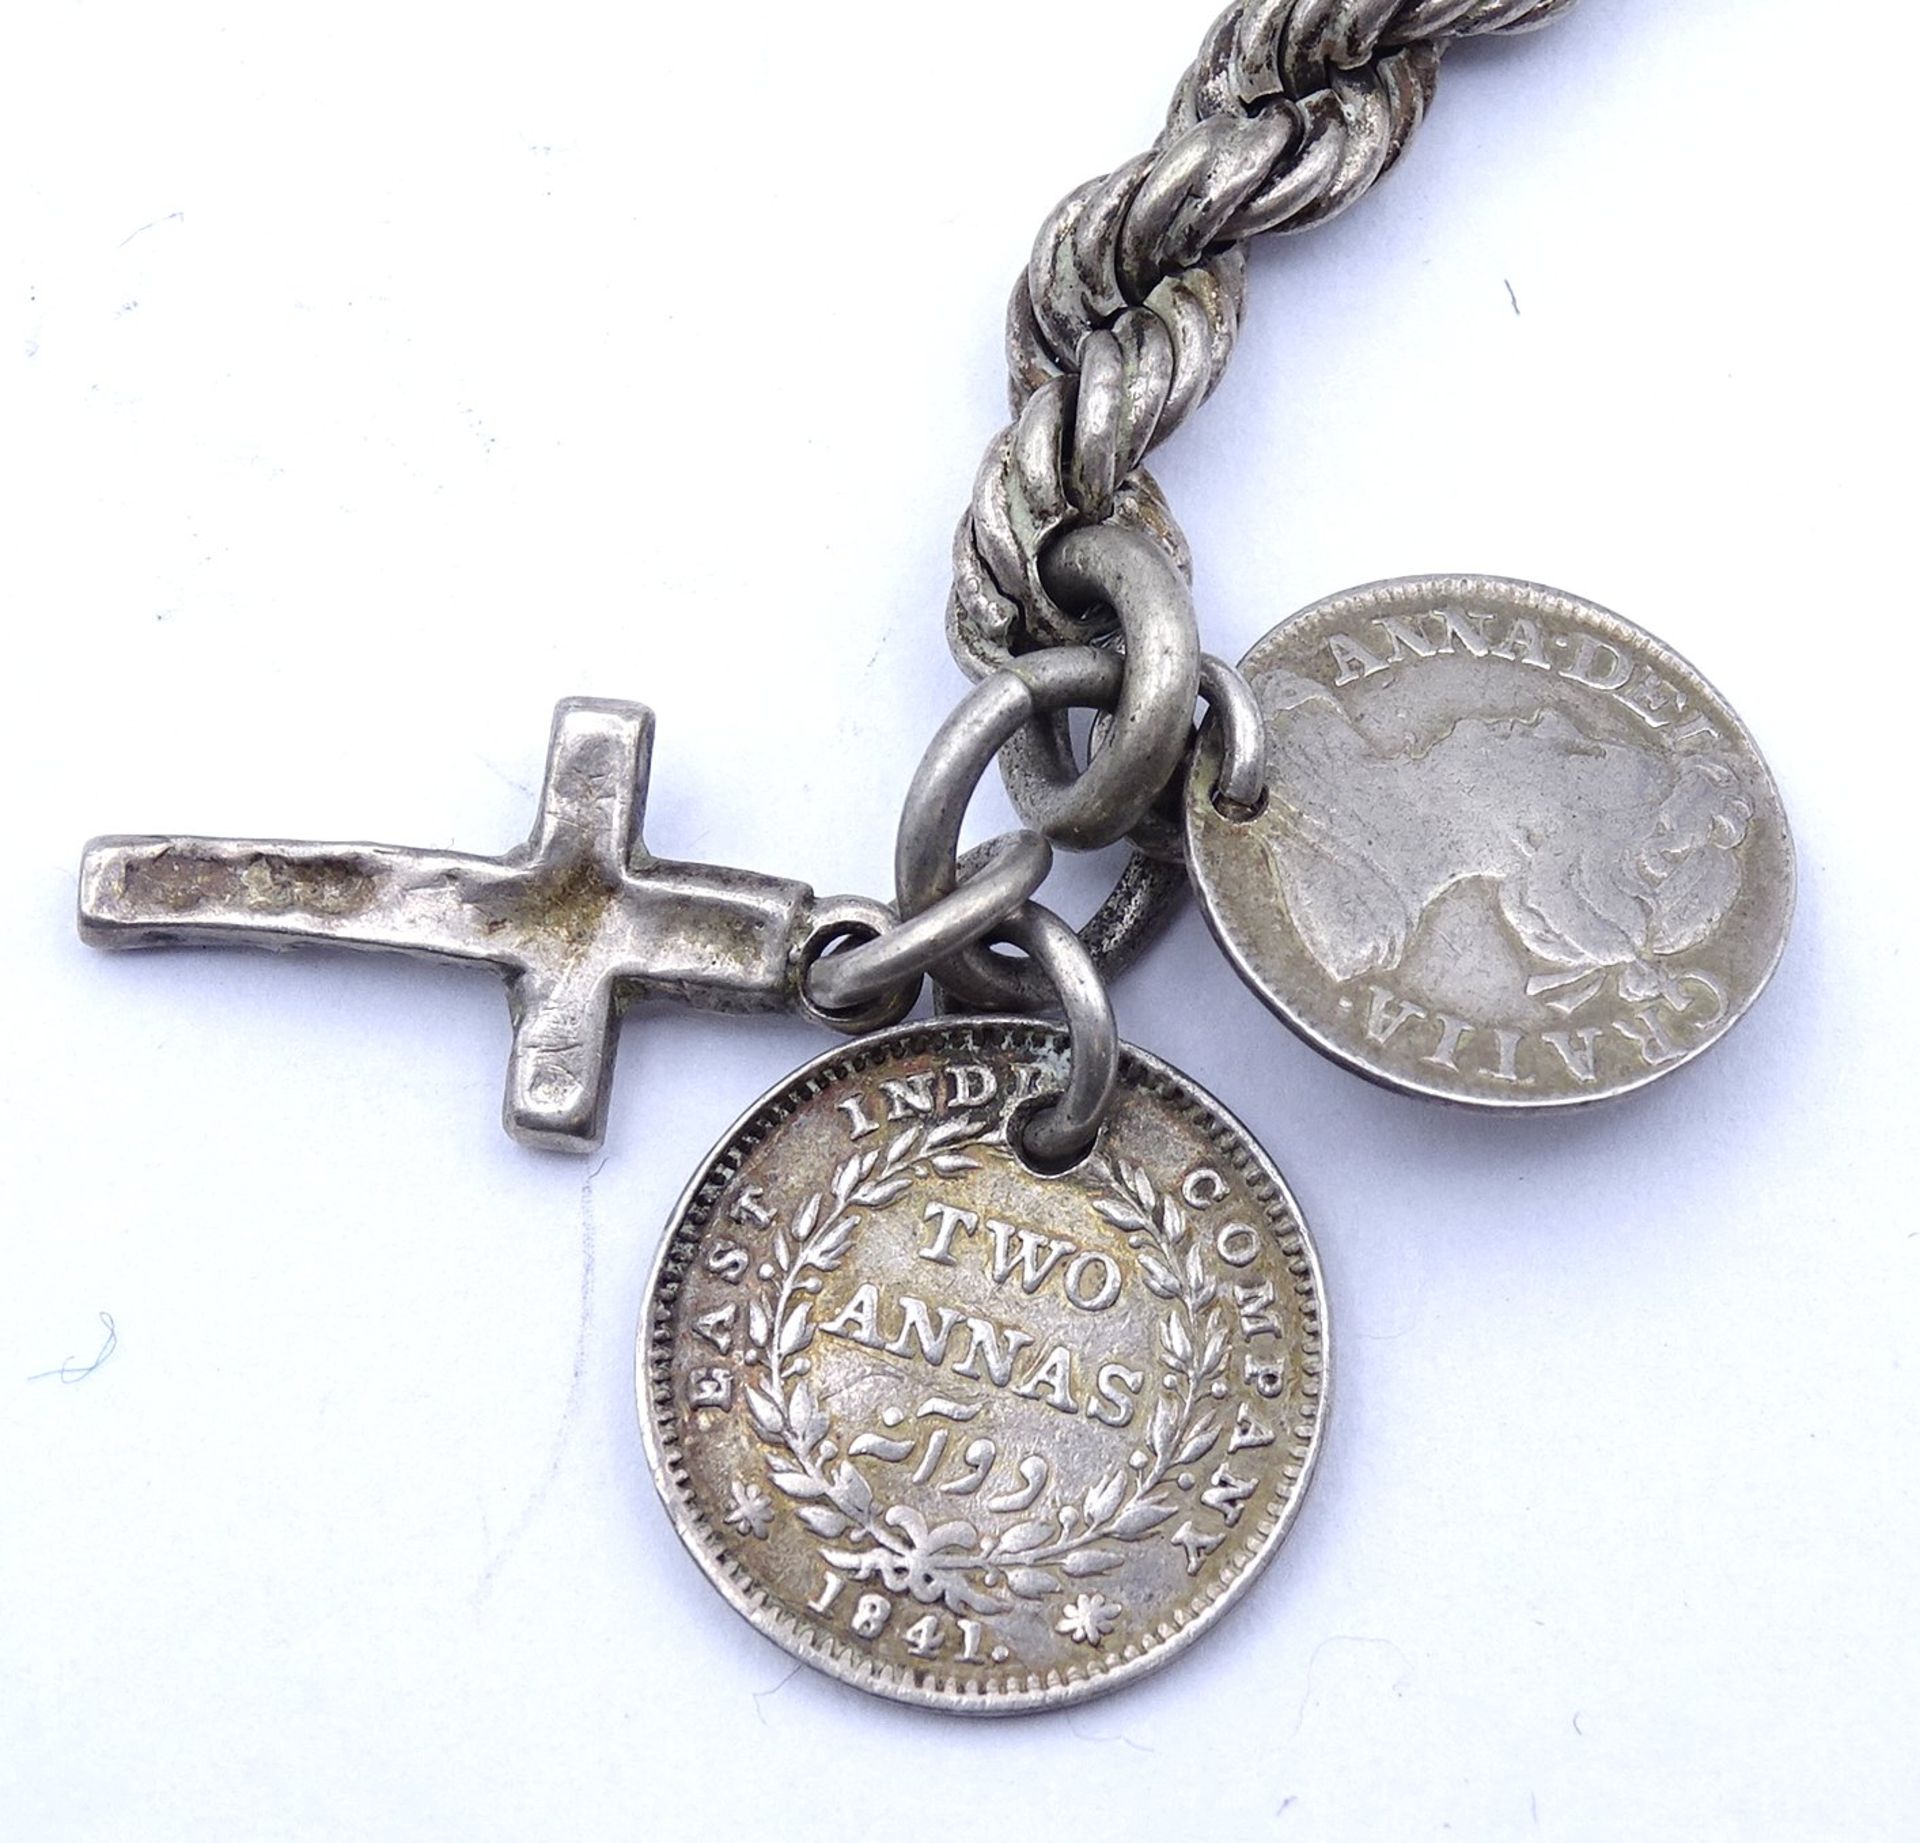 Uhrenkette, Silber, mit Kreuz und Münz Anhängern, L. 36cm, 38g. - Image 3 of 3